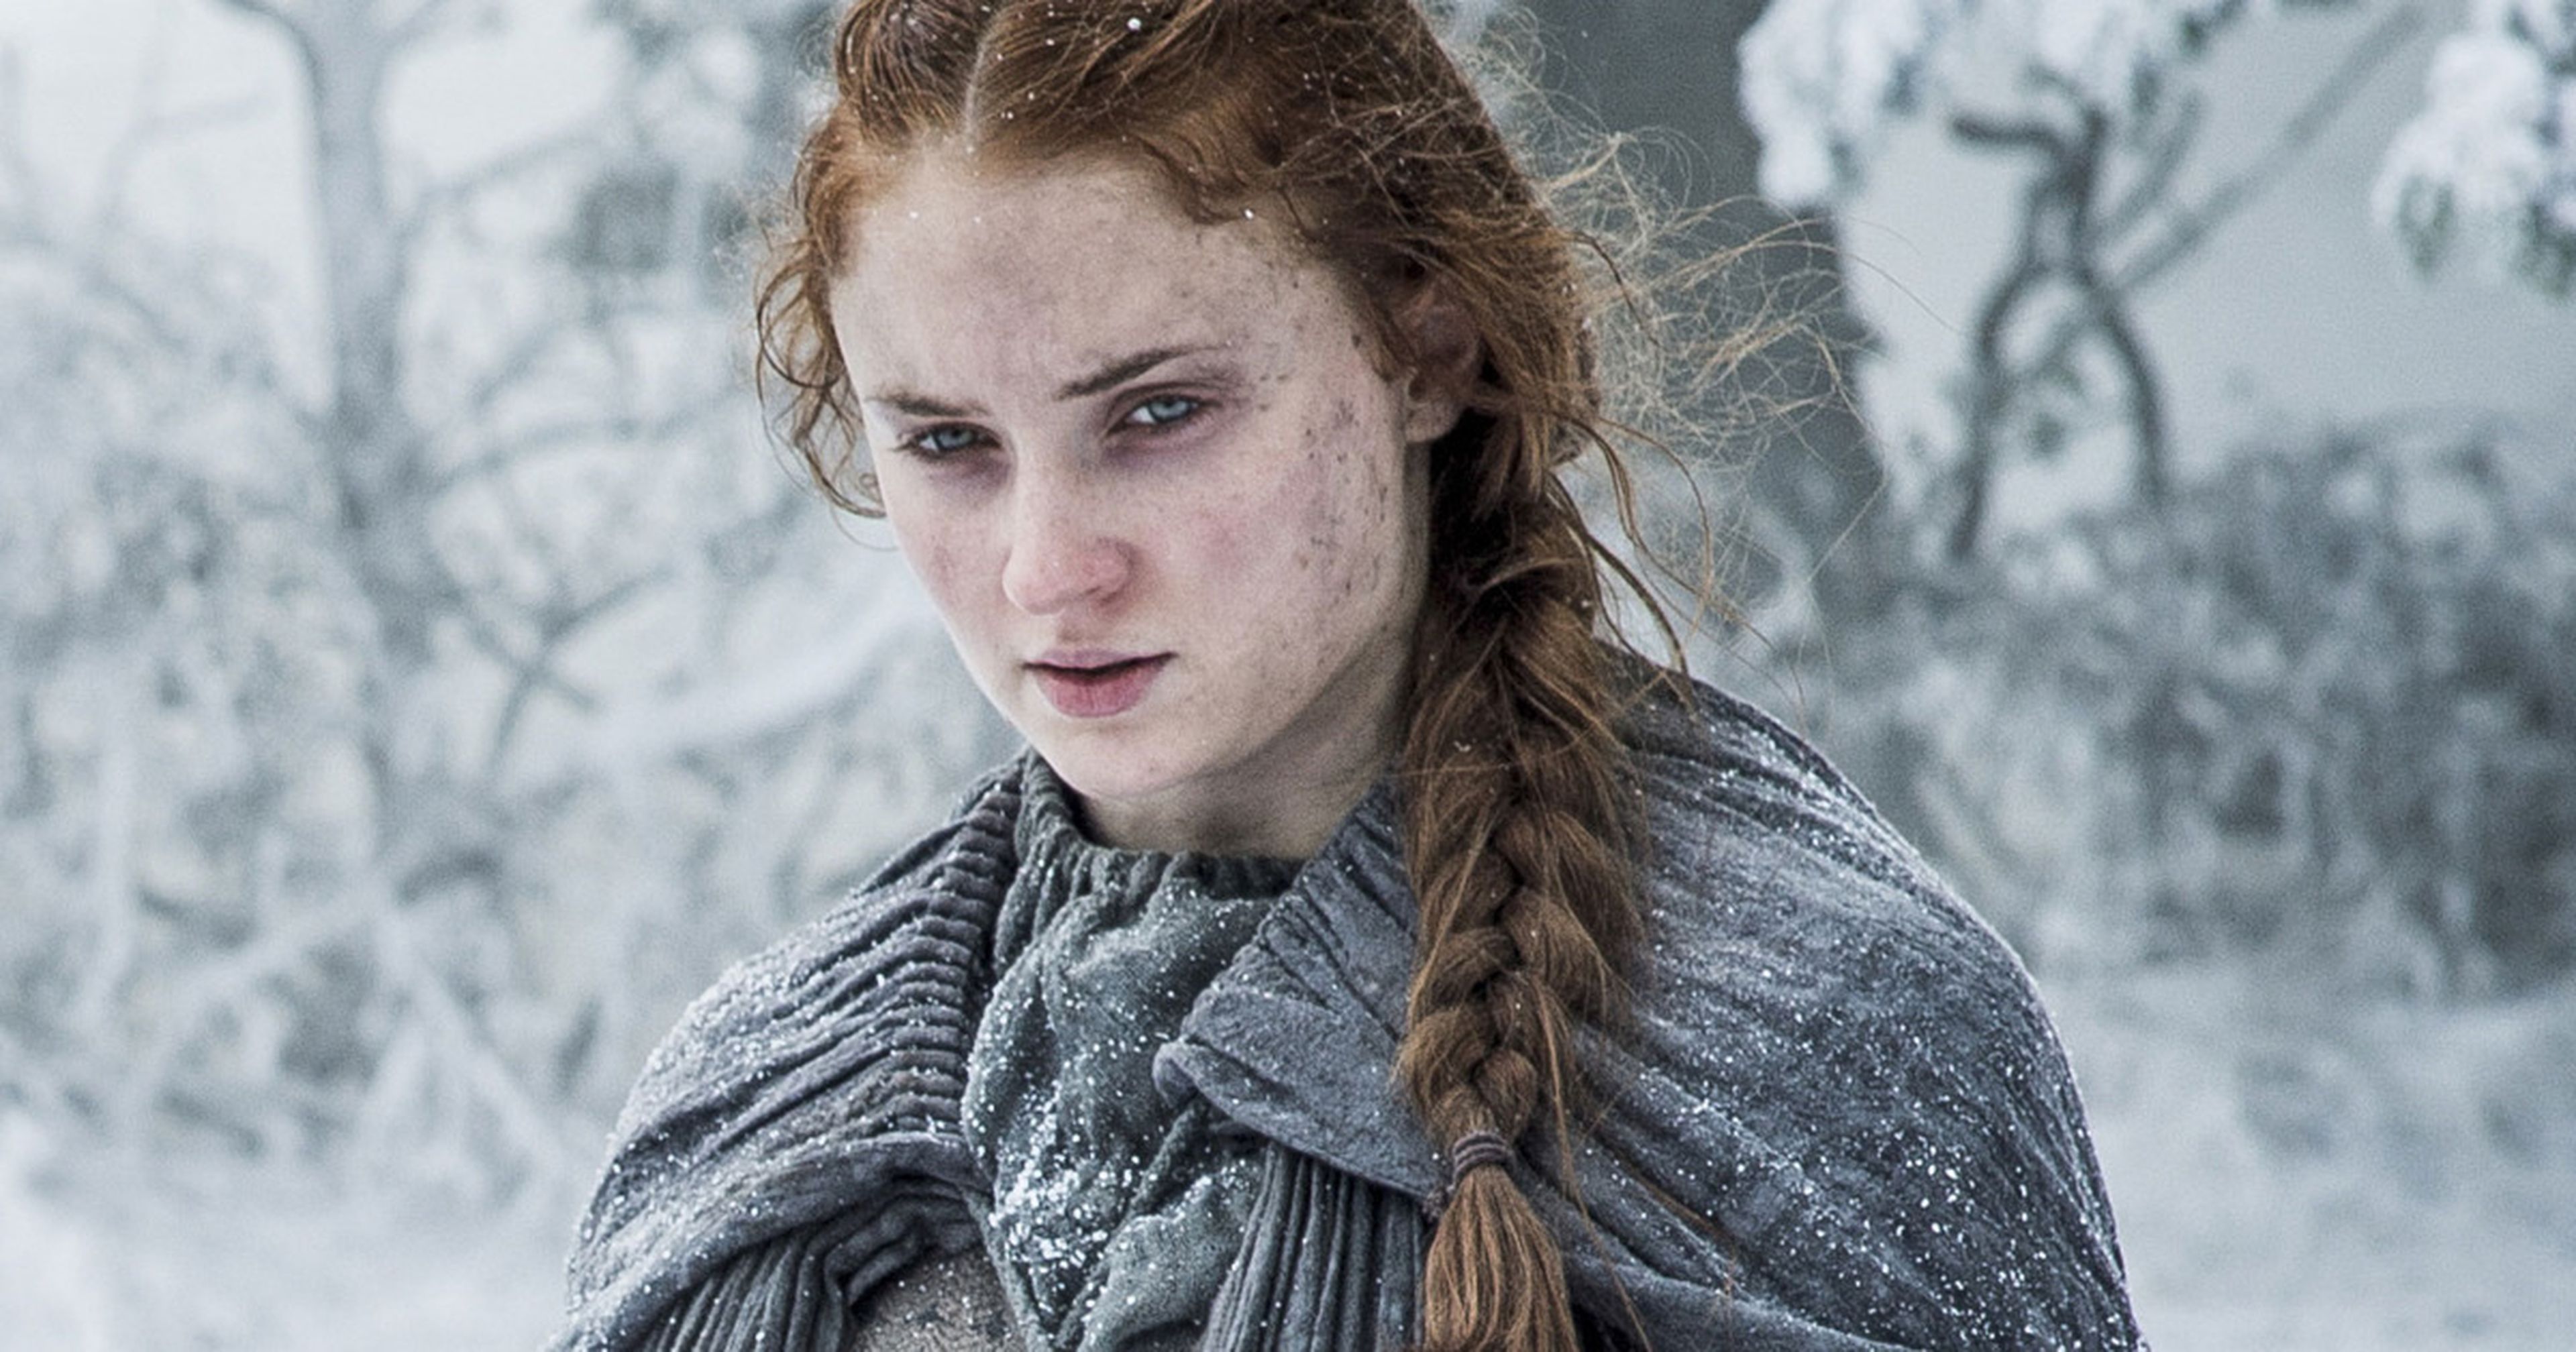 Sansa Stark jamás vuelve a Invernalia, no se casa con Ramsay Bolton y no se reecuentra con sus hermanos. En Canción de Hielo y Fuego es una amiga muy parecida la enviada al Norte para satisface a los Bolton. Ella sigue en el Nido de Águilas.